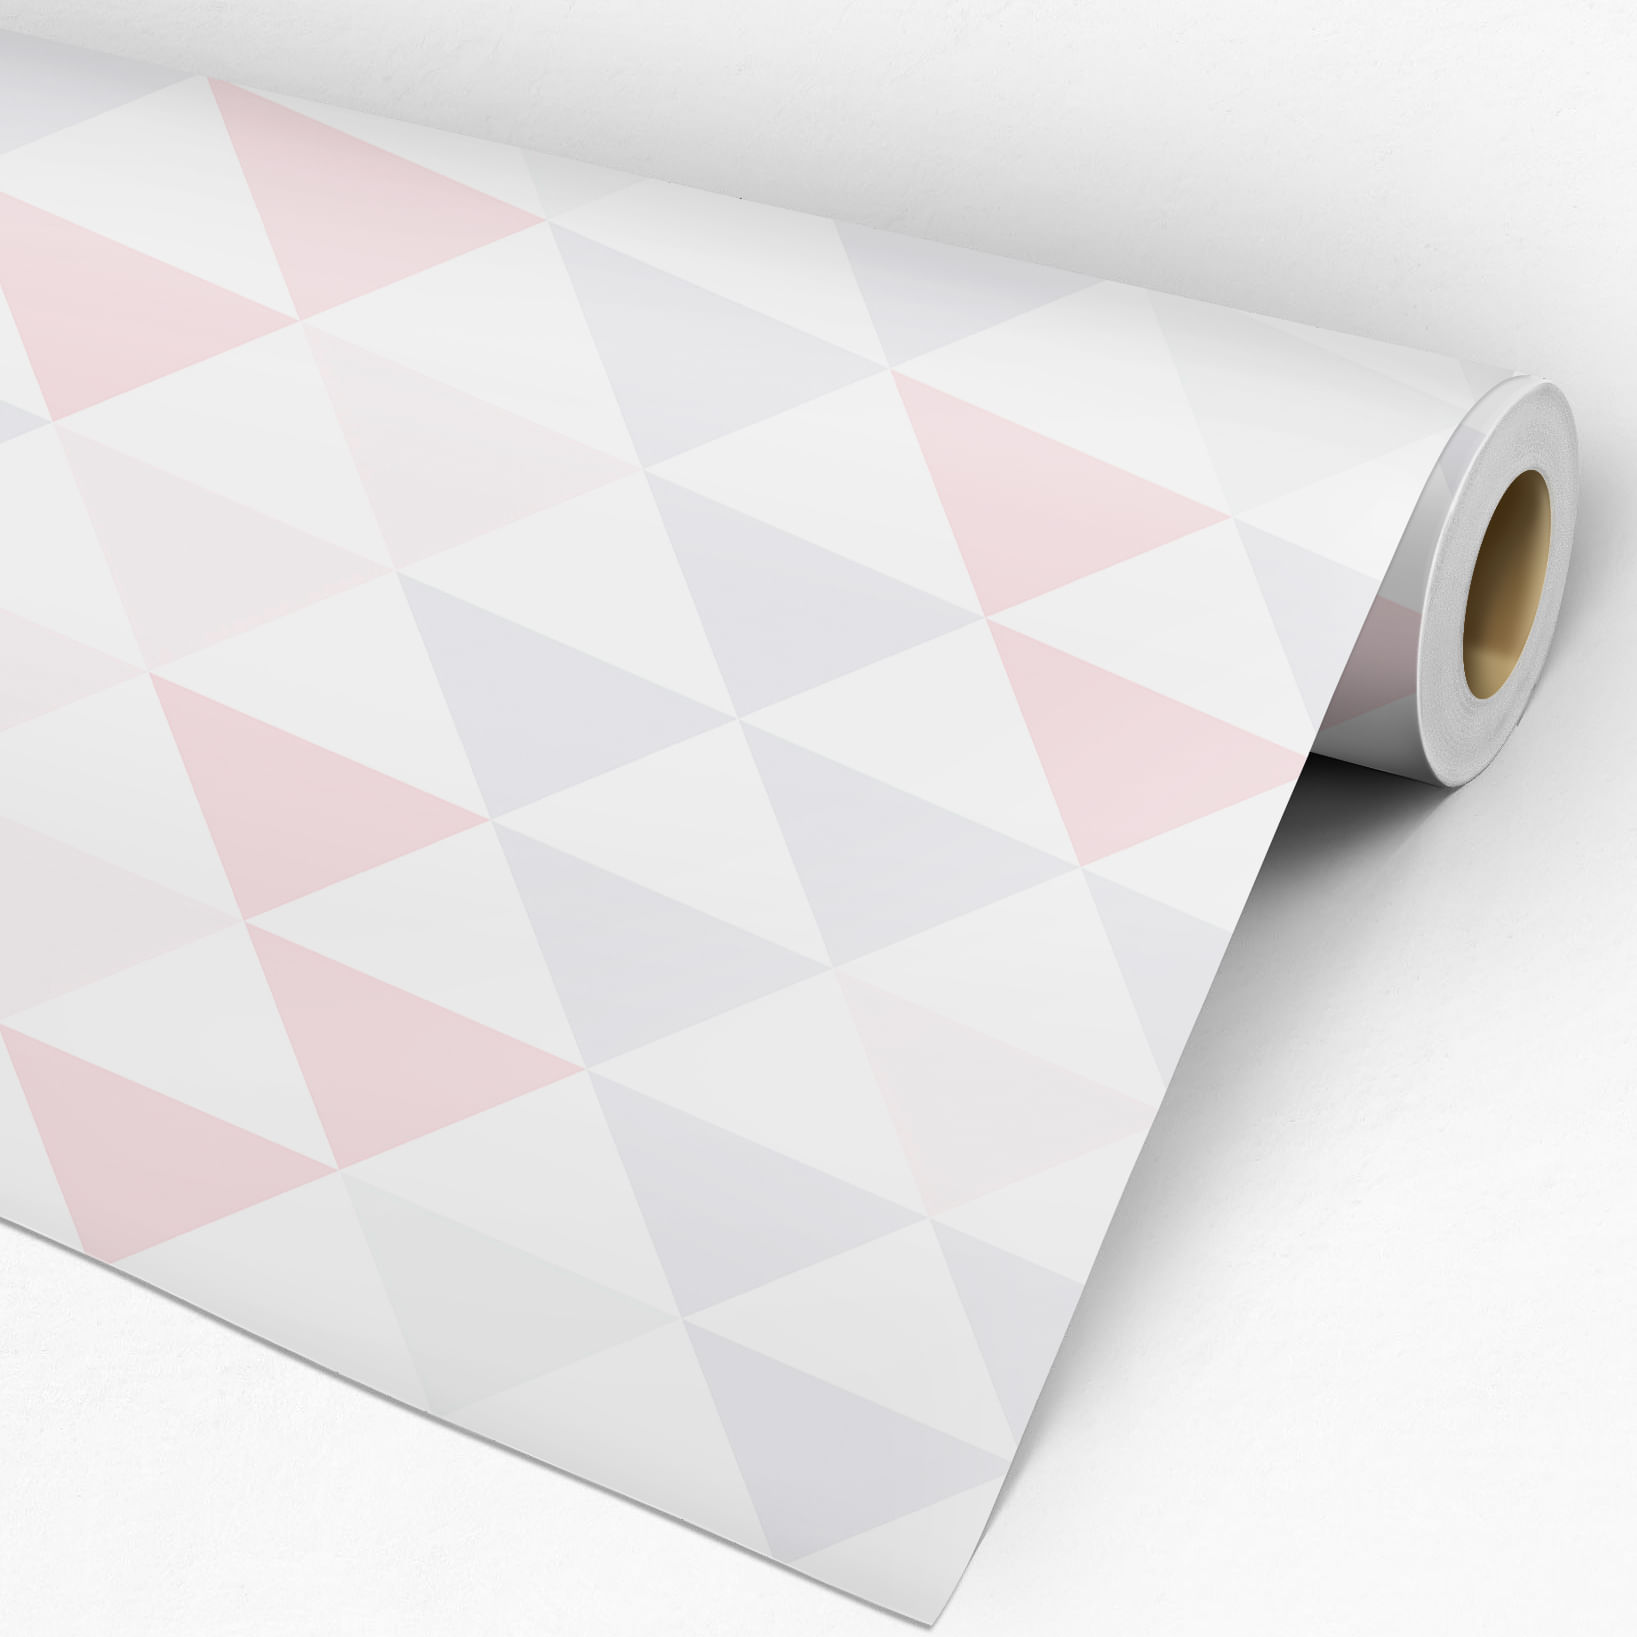 Papel de Parede Adesivo Geométrico Triângulos Rosa e Cinza